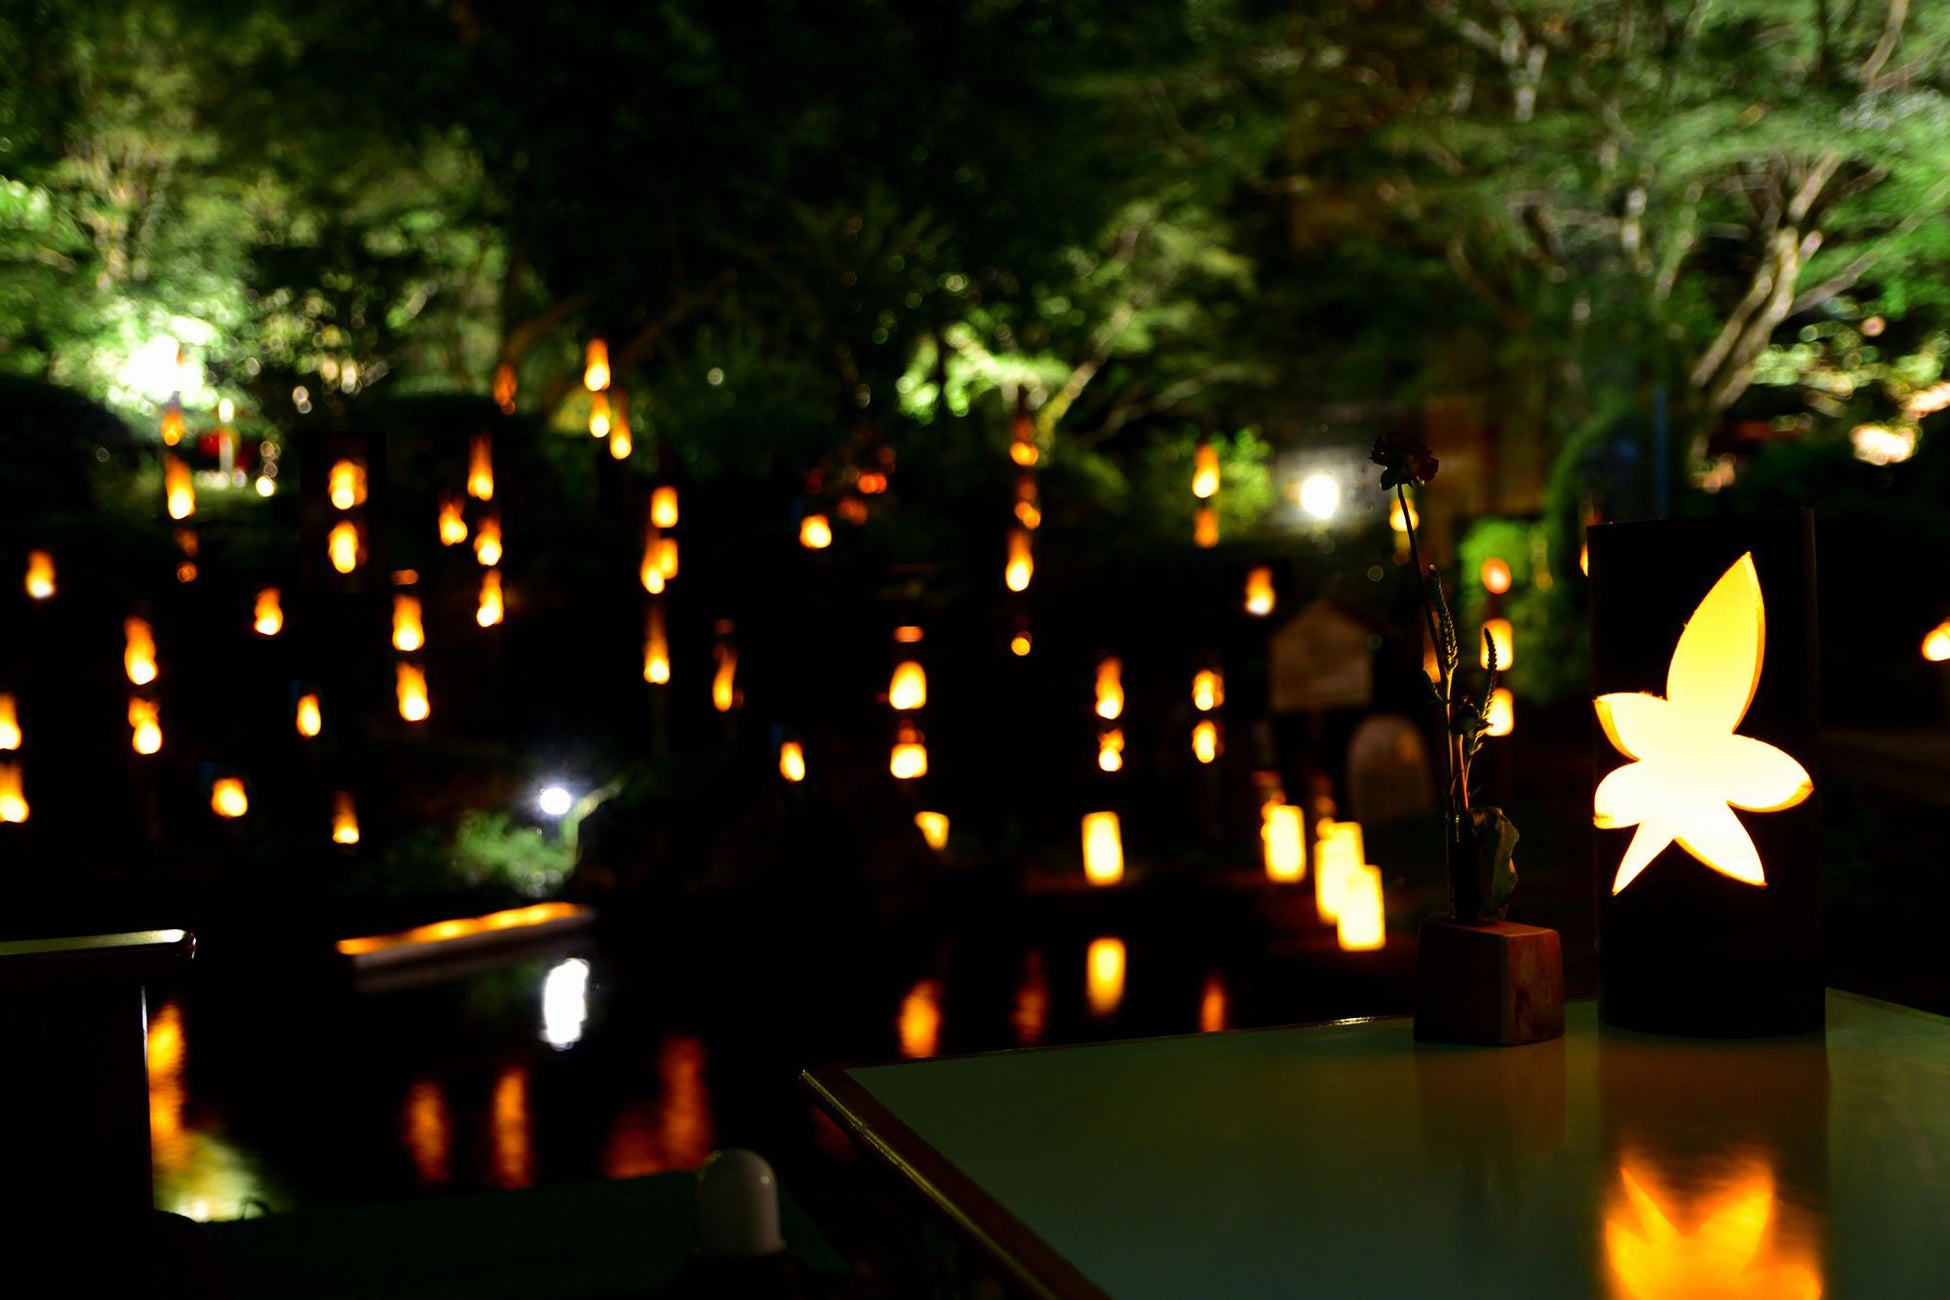 幻想的な光が魅力の「庭園竹灯り」を7月1日より実施。28日には記念コンサートも開催 – 新潟県阿賀野市